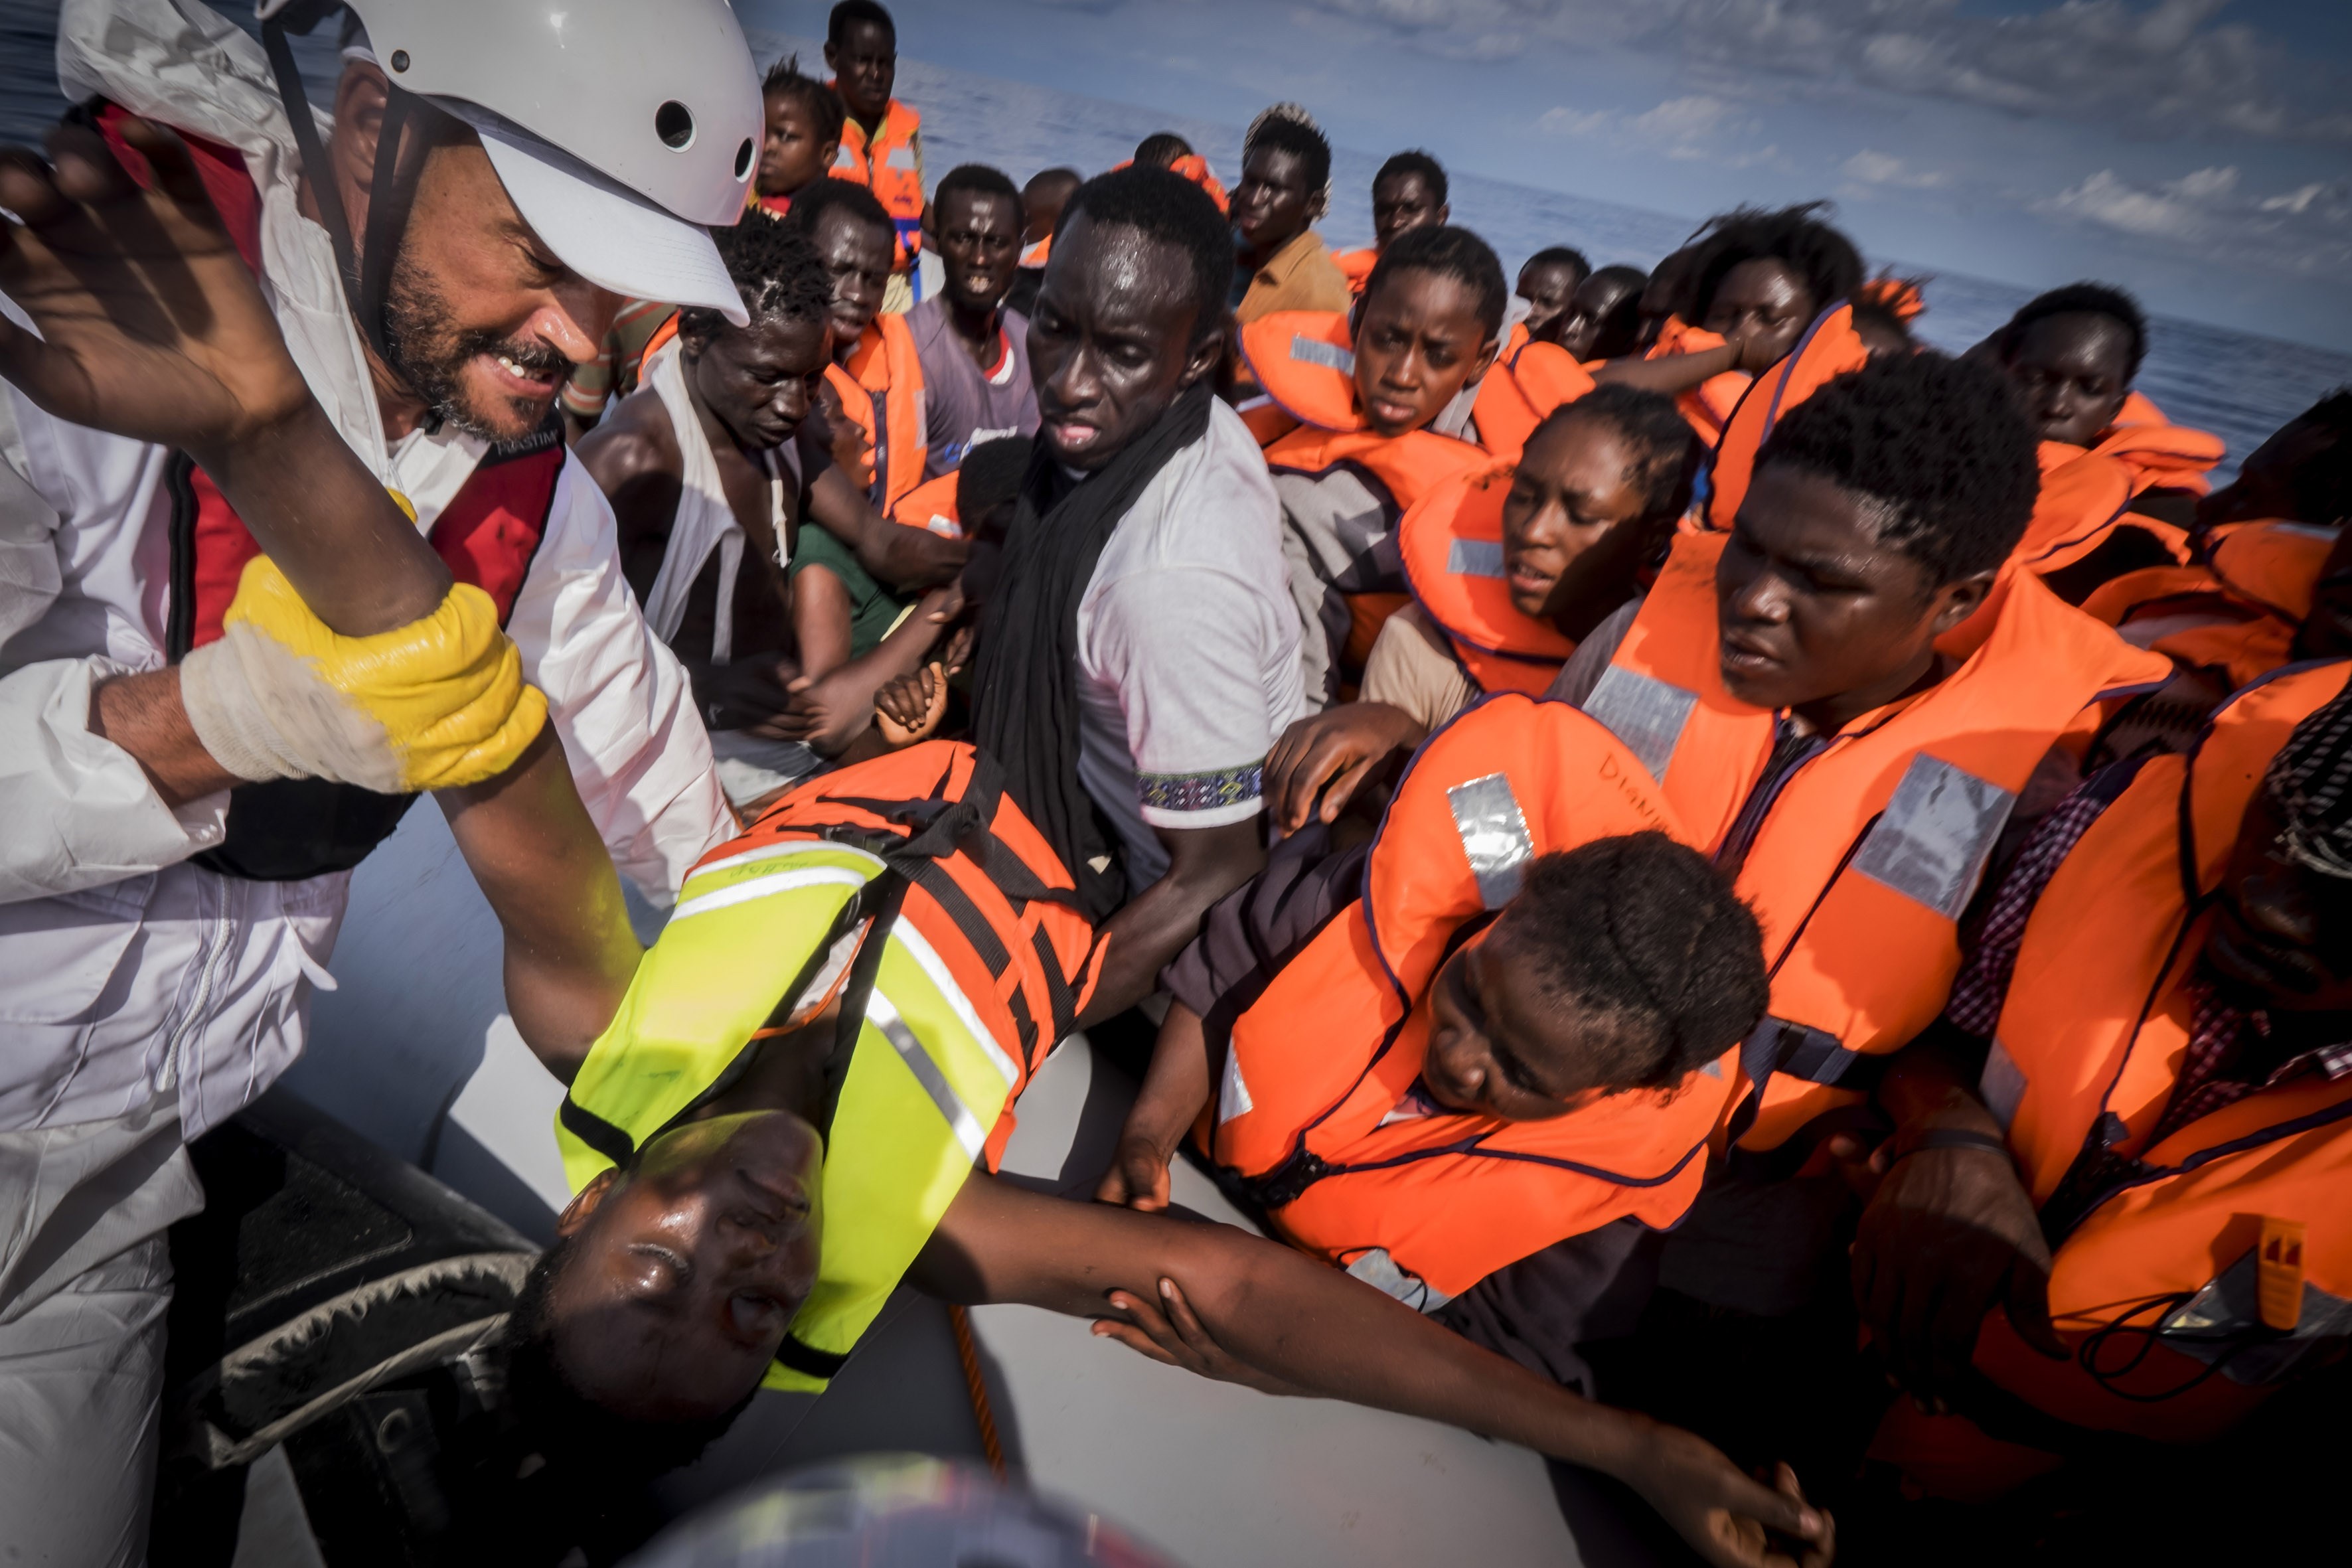 Un equipo de salvamento rescata a un grupo de inmigrantes que intentaba cruzar el mar Mediterráneo desde costas libias a bordo de una embarcación. (Crédito: Ricardo Garcia Vilanova/AFP/Getty Images).